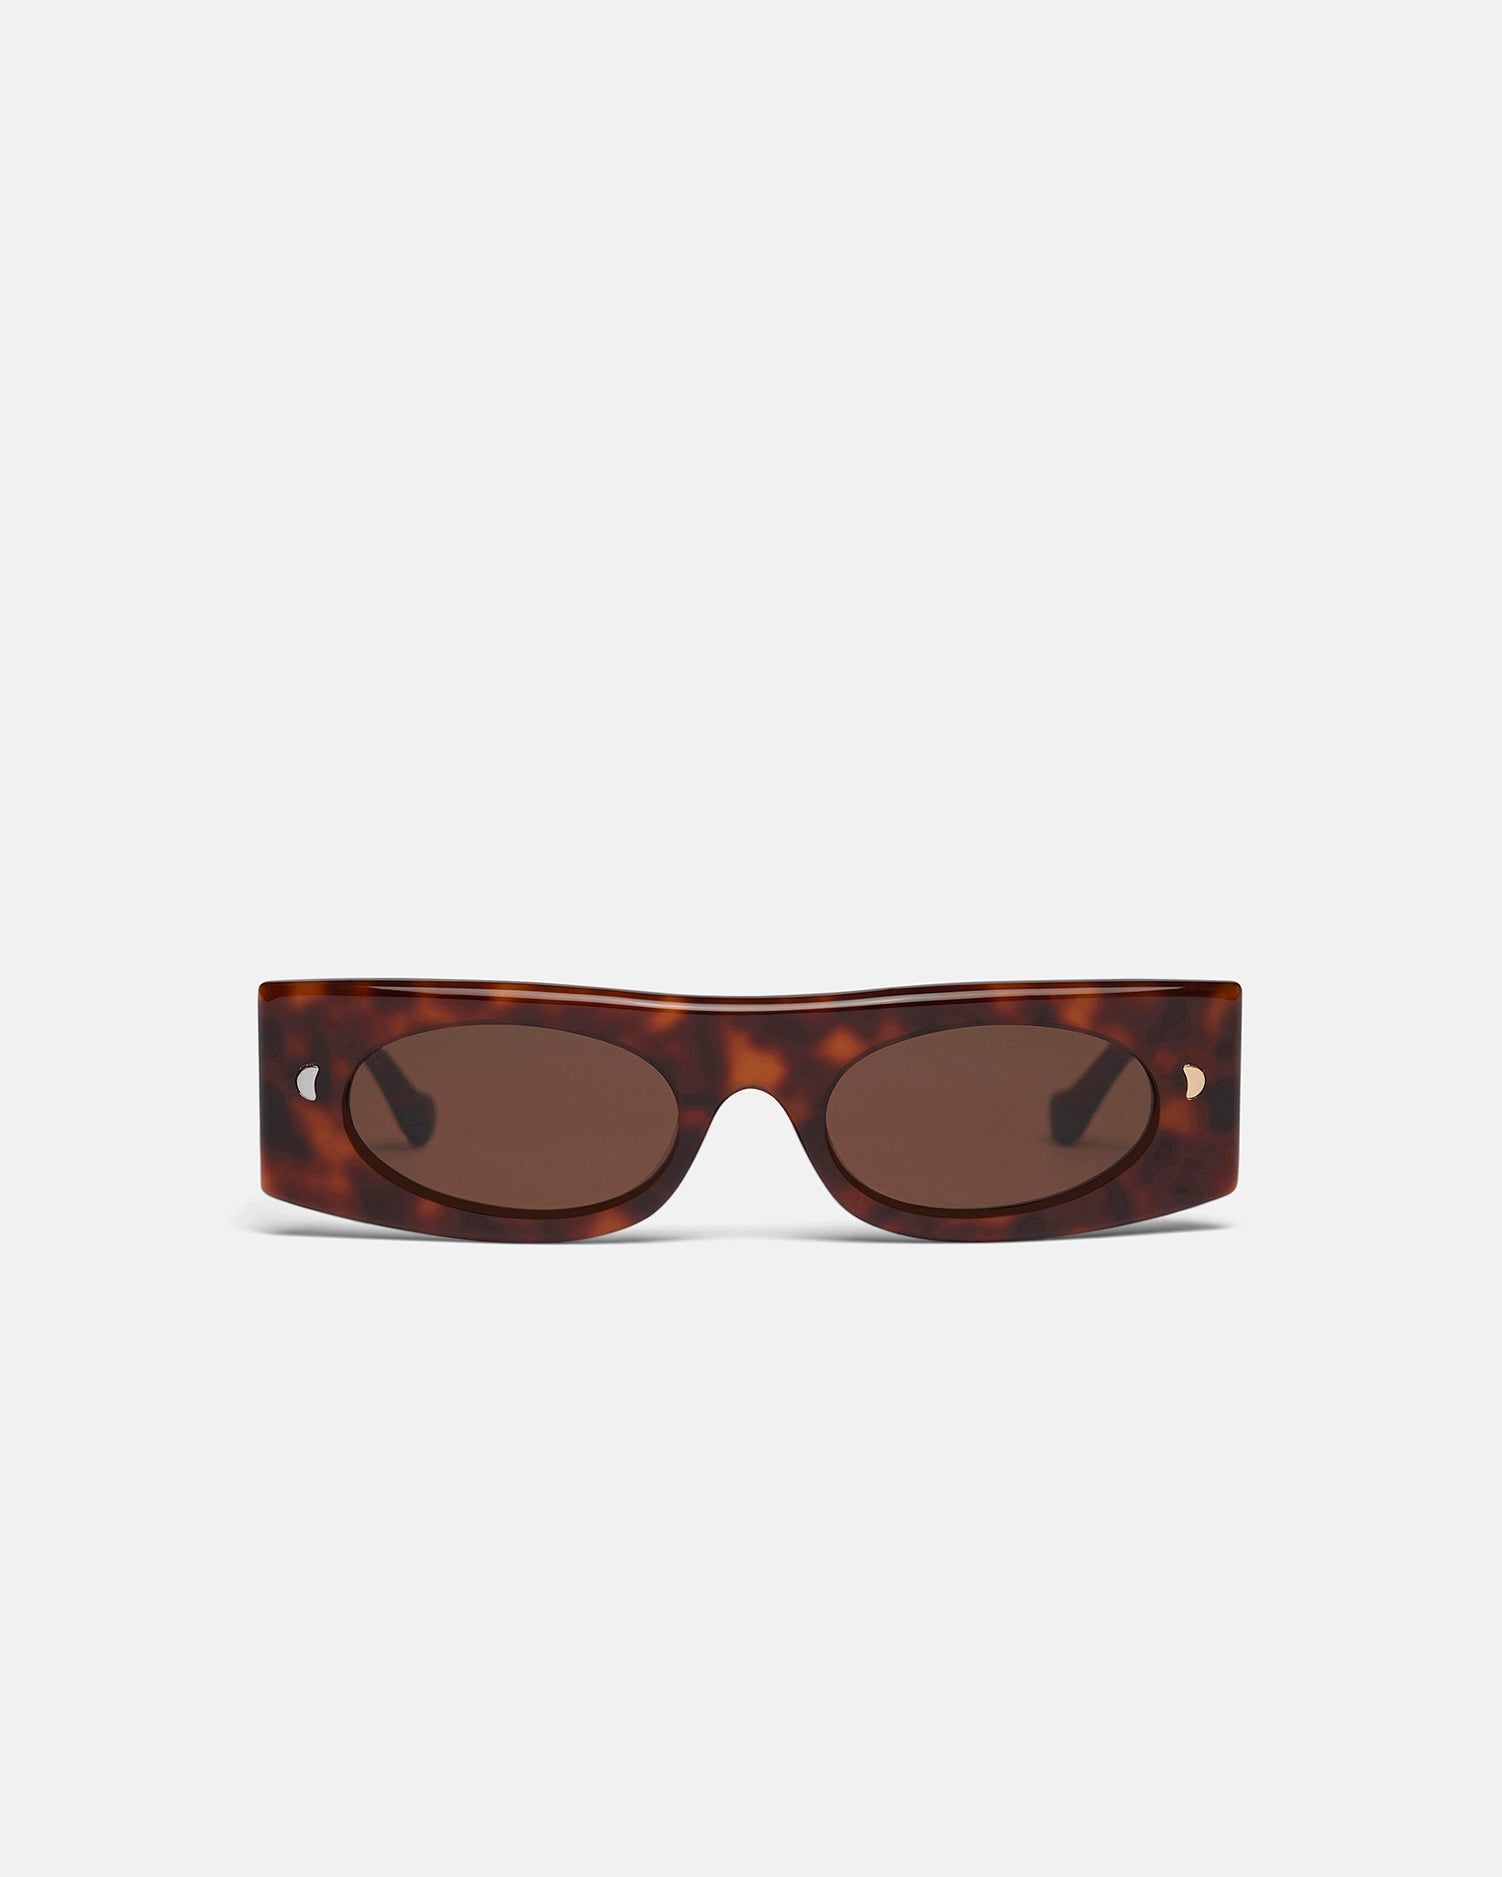 Nanushka - Ruthie - Bio-Plastic Visor Sunglasses - Black